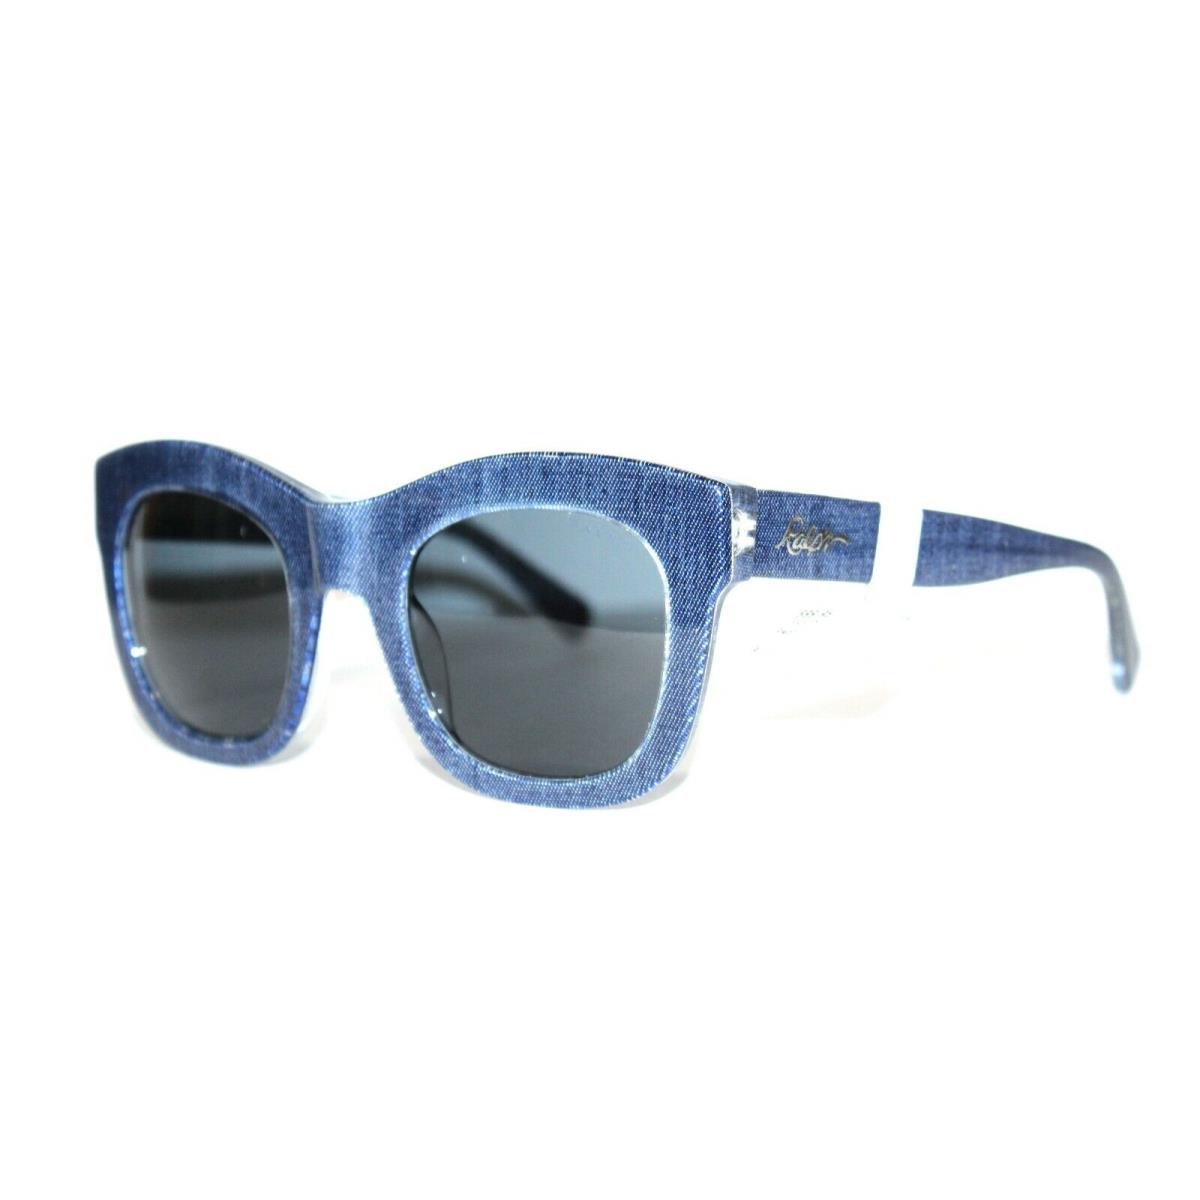 Ralph Lauren sunglasses  - Blue Frame, Gray Lens 0